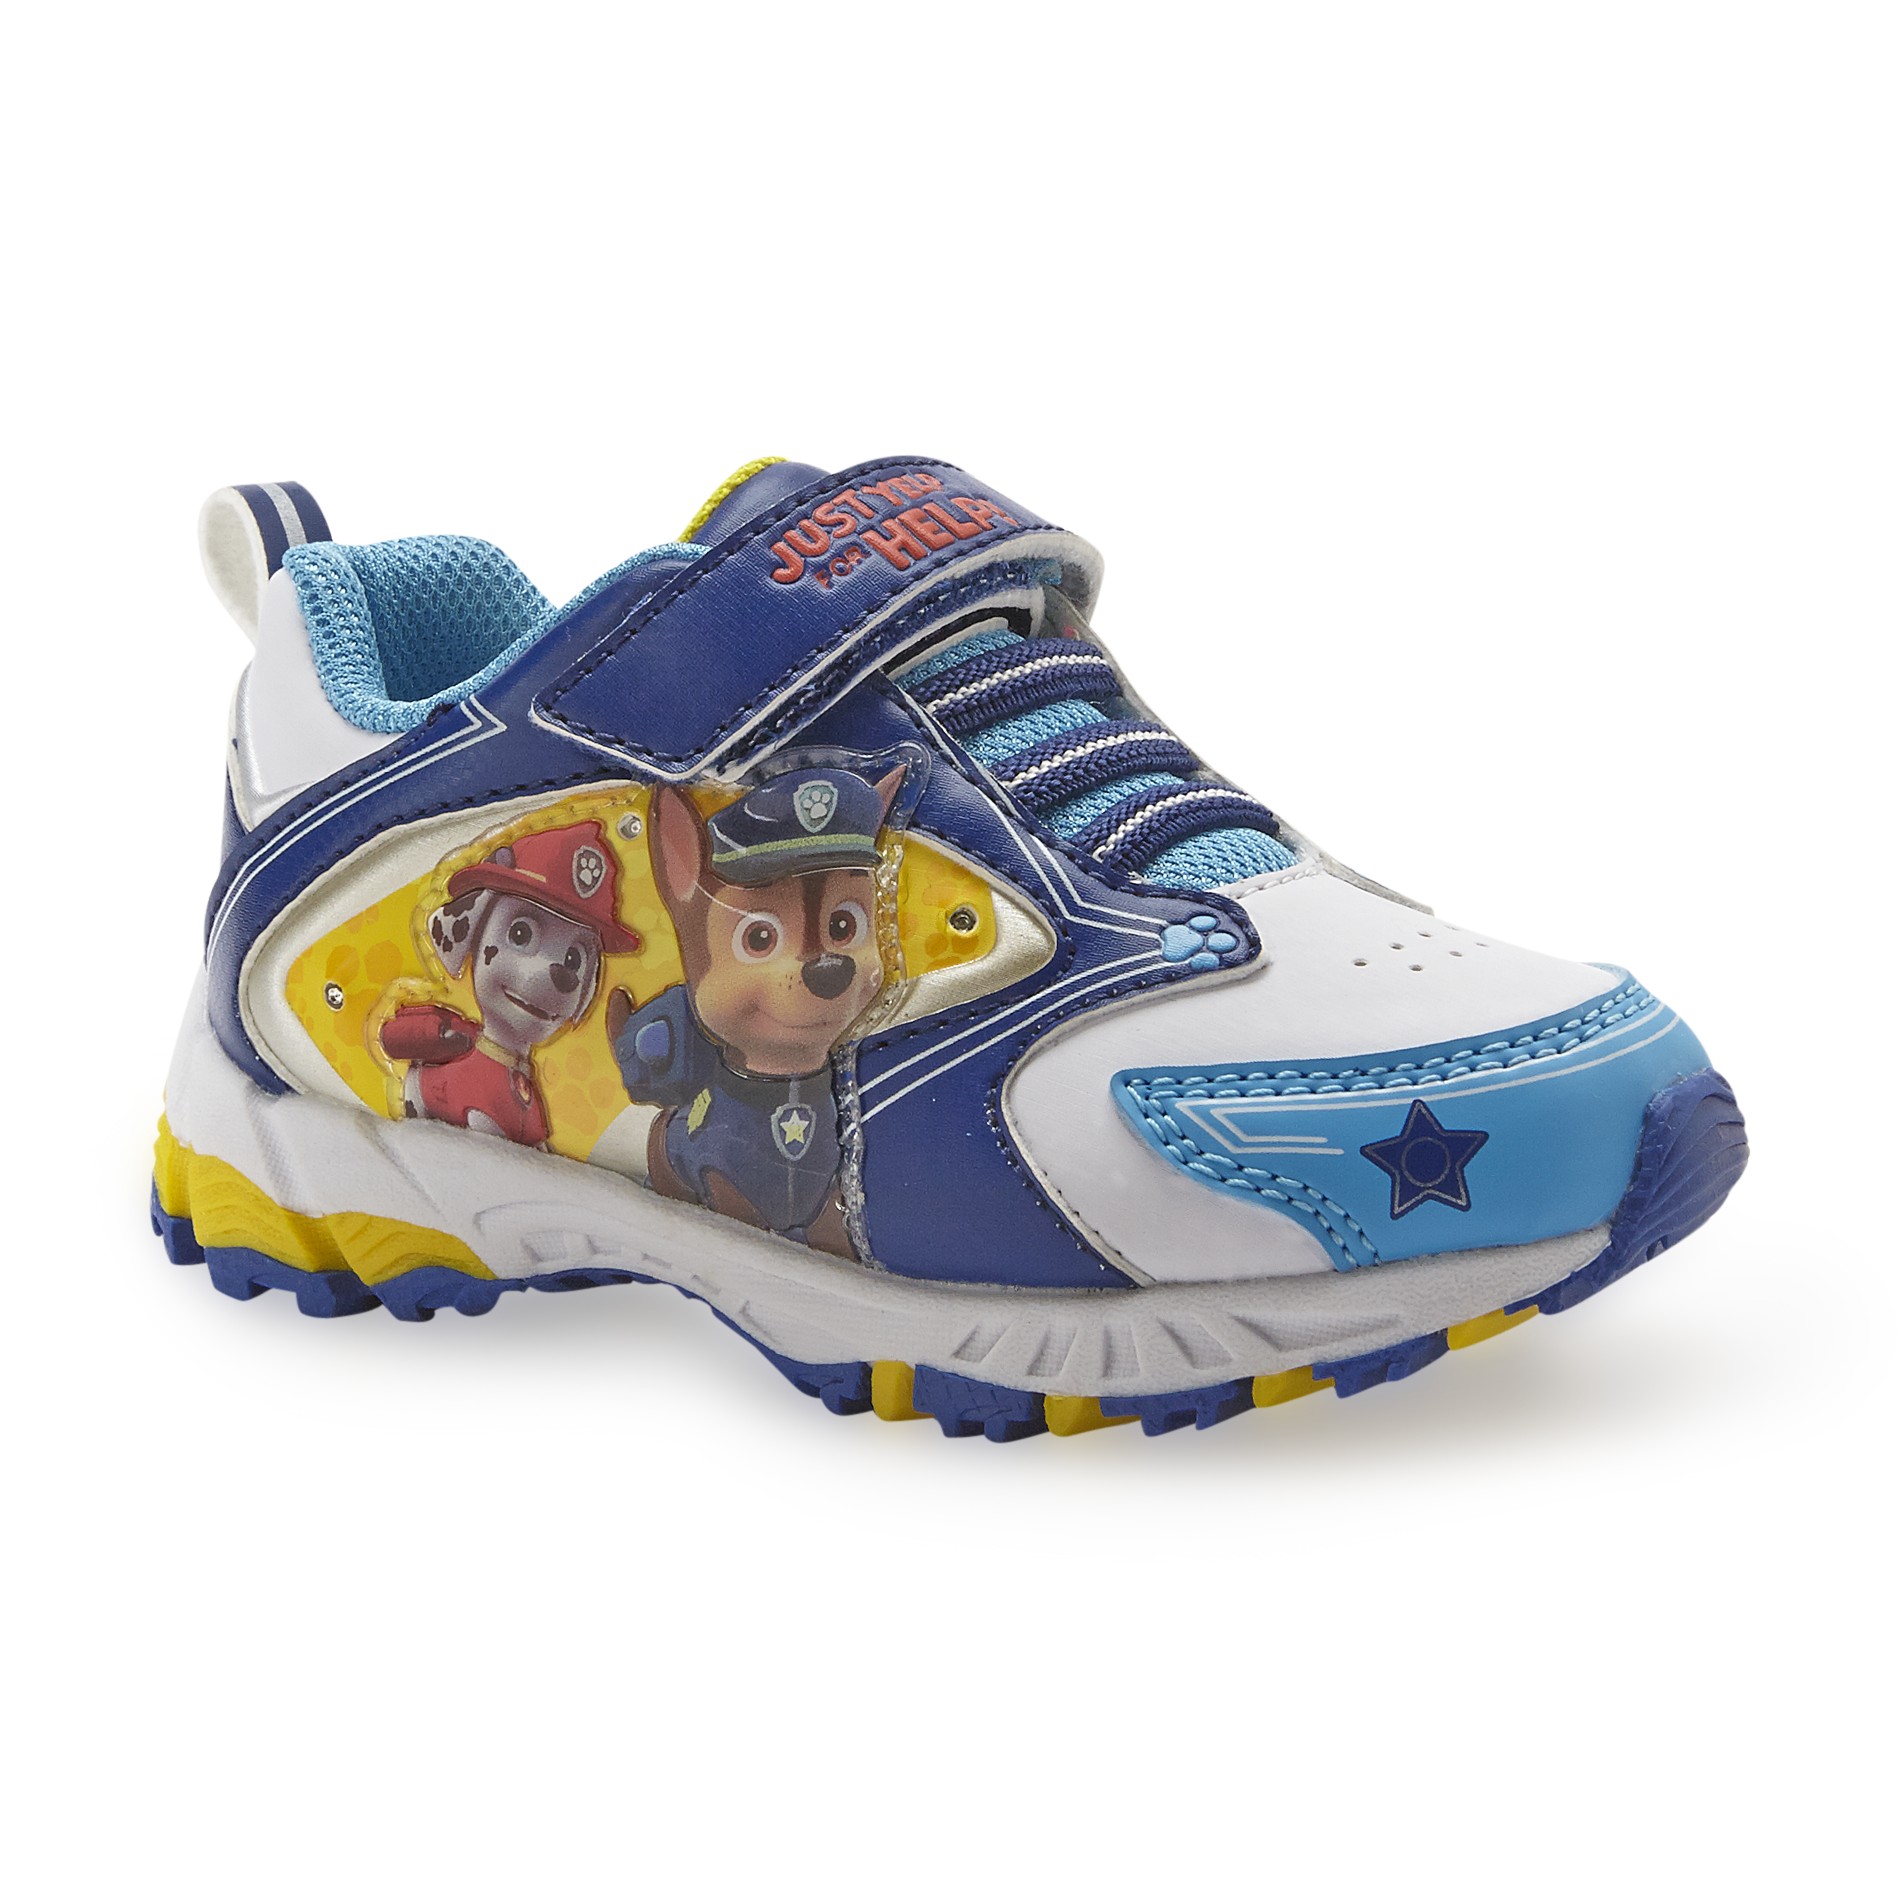 Nickelodeon Toddler Boy's Paw Patrol Blue/White Athletic Shoe